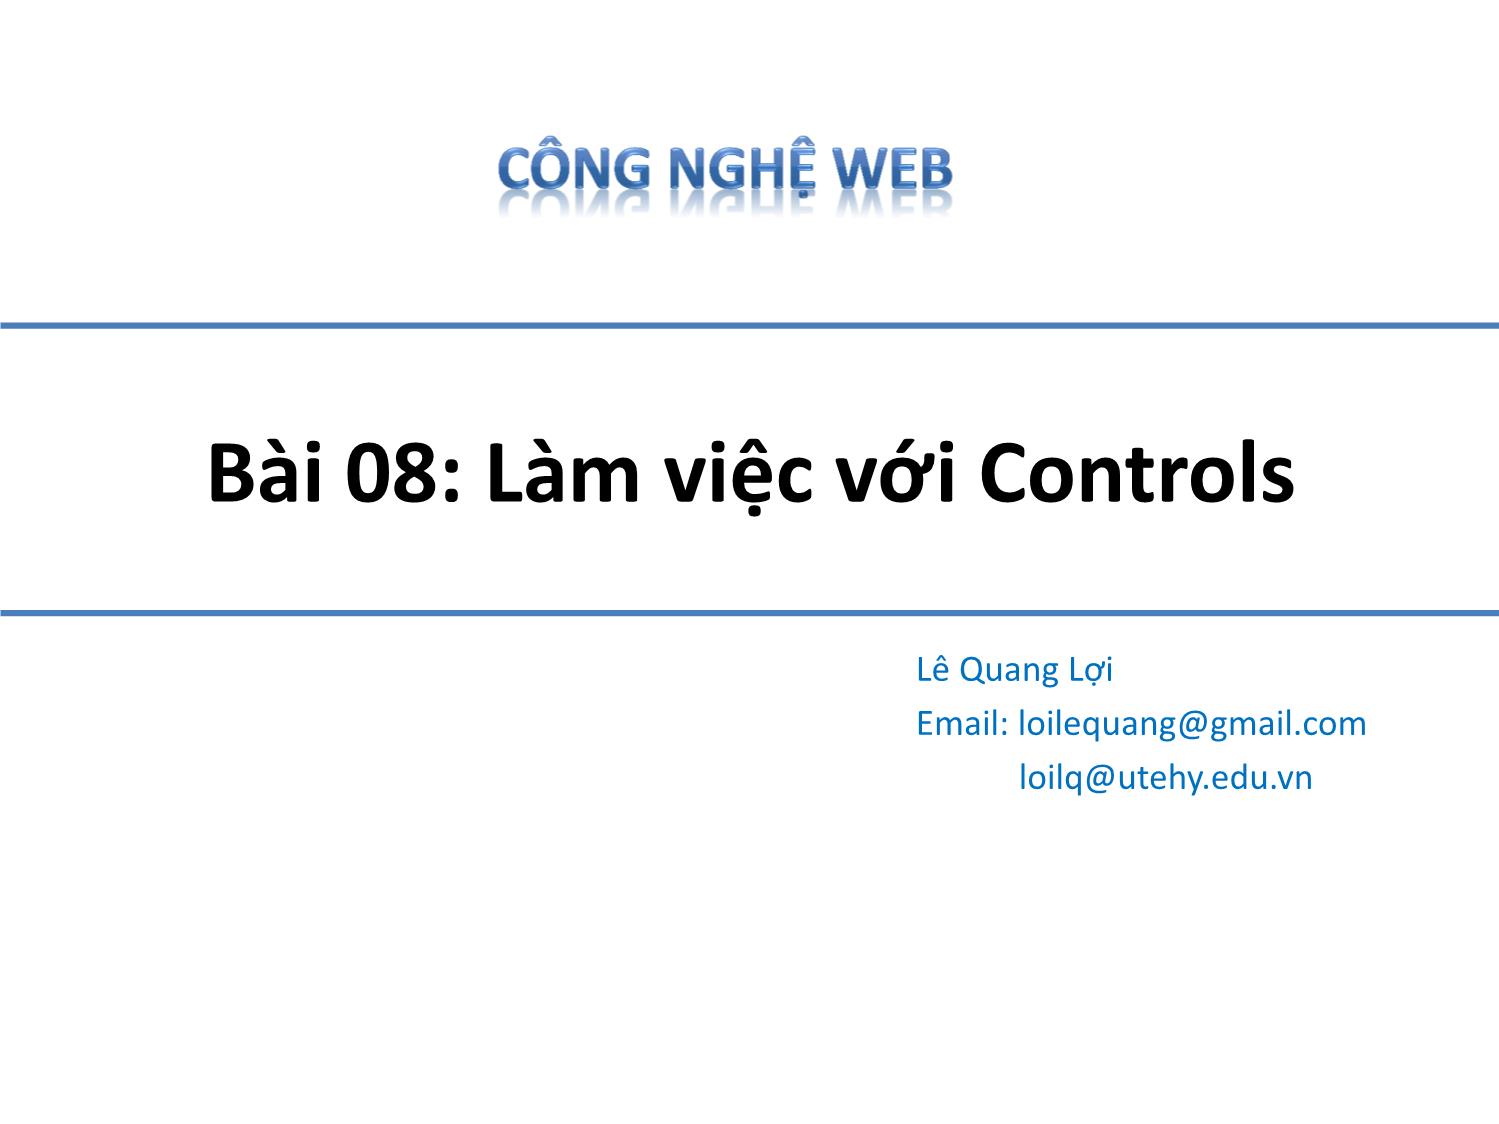 Bài giảng Công nghệ Web - Bài 8: Làm việc với Controls - Lê Quang Lợi trang 1